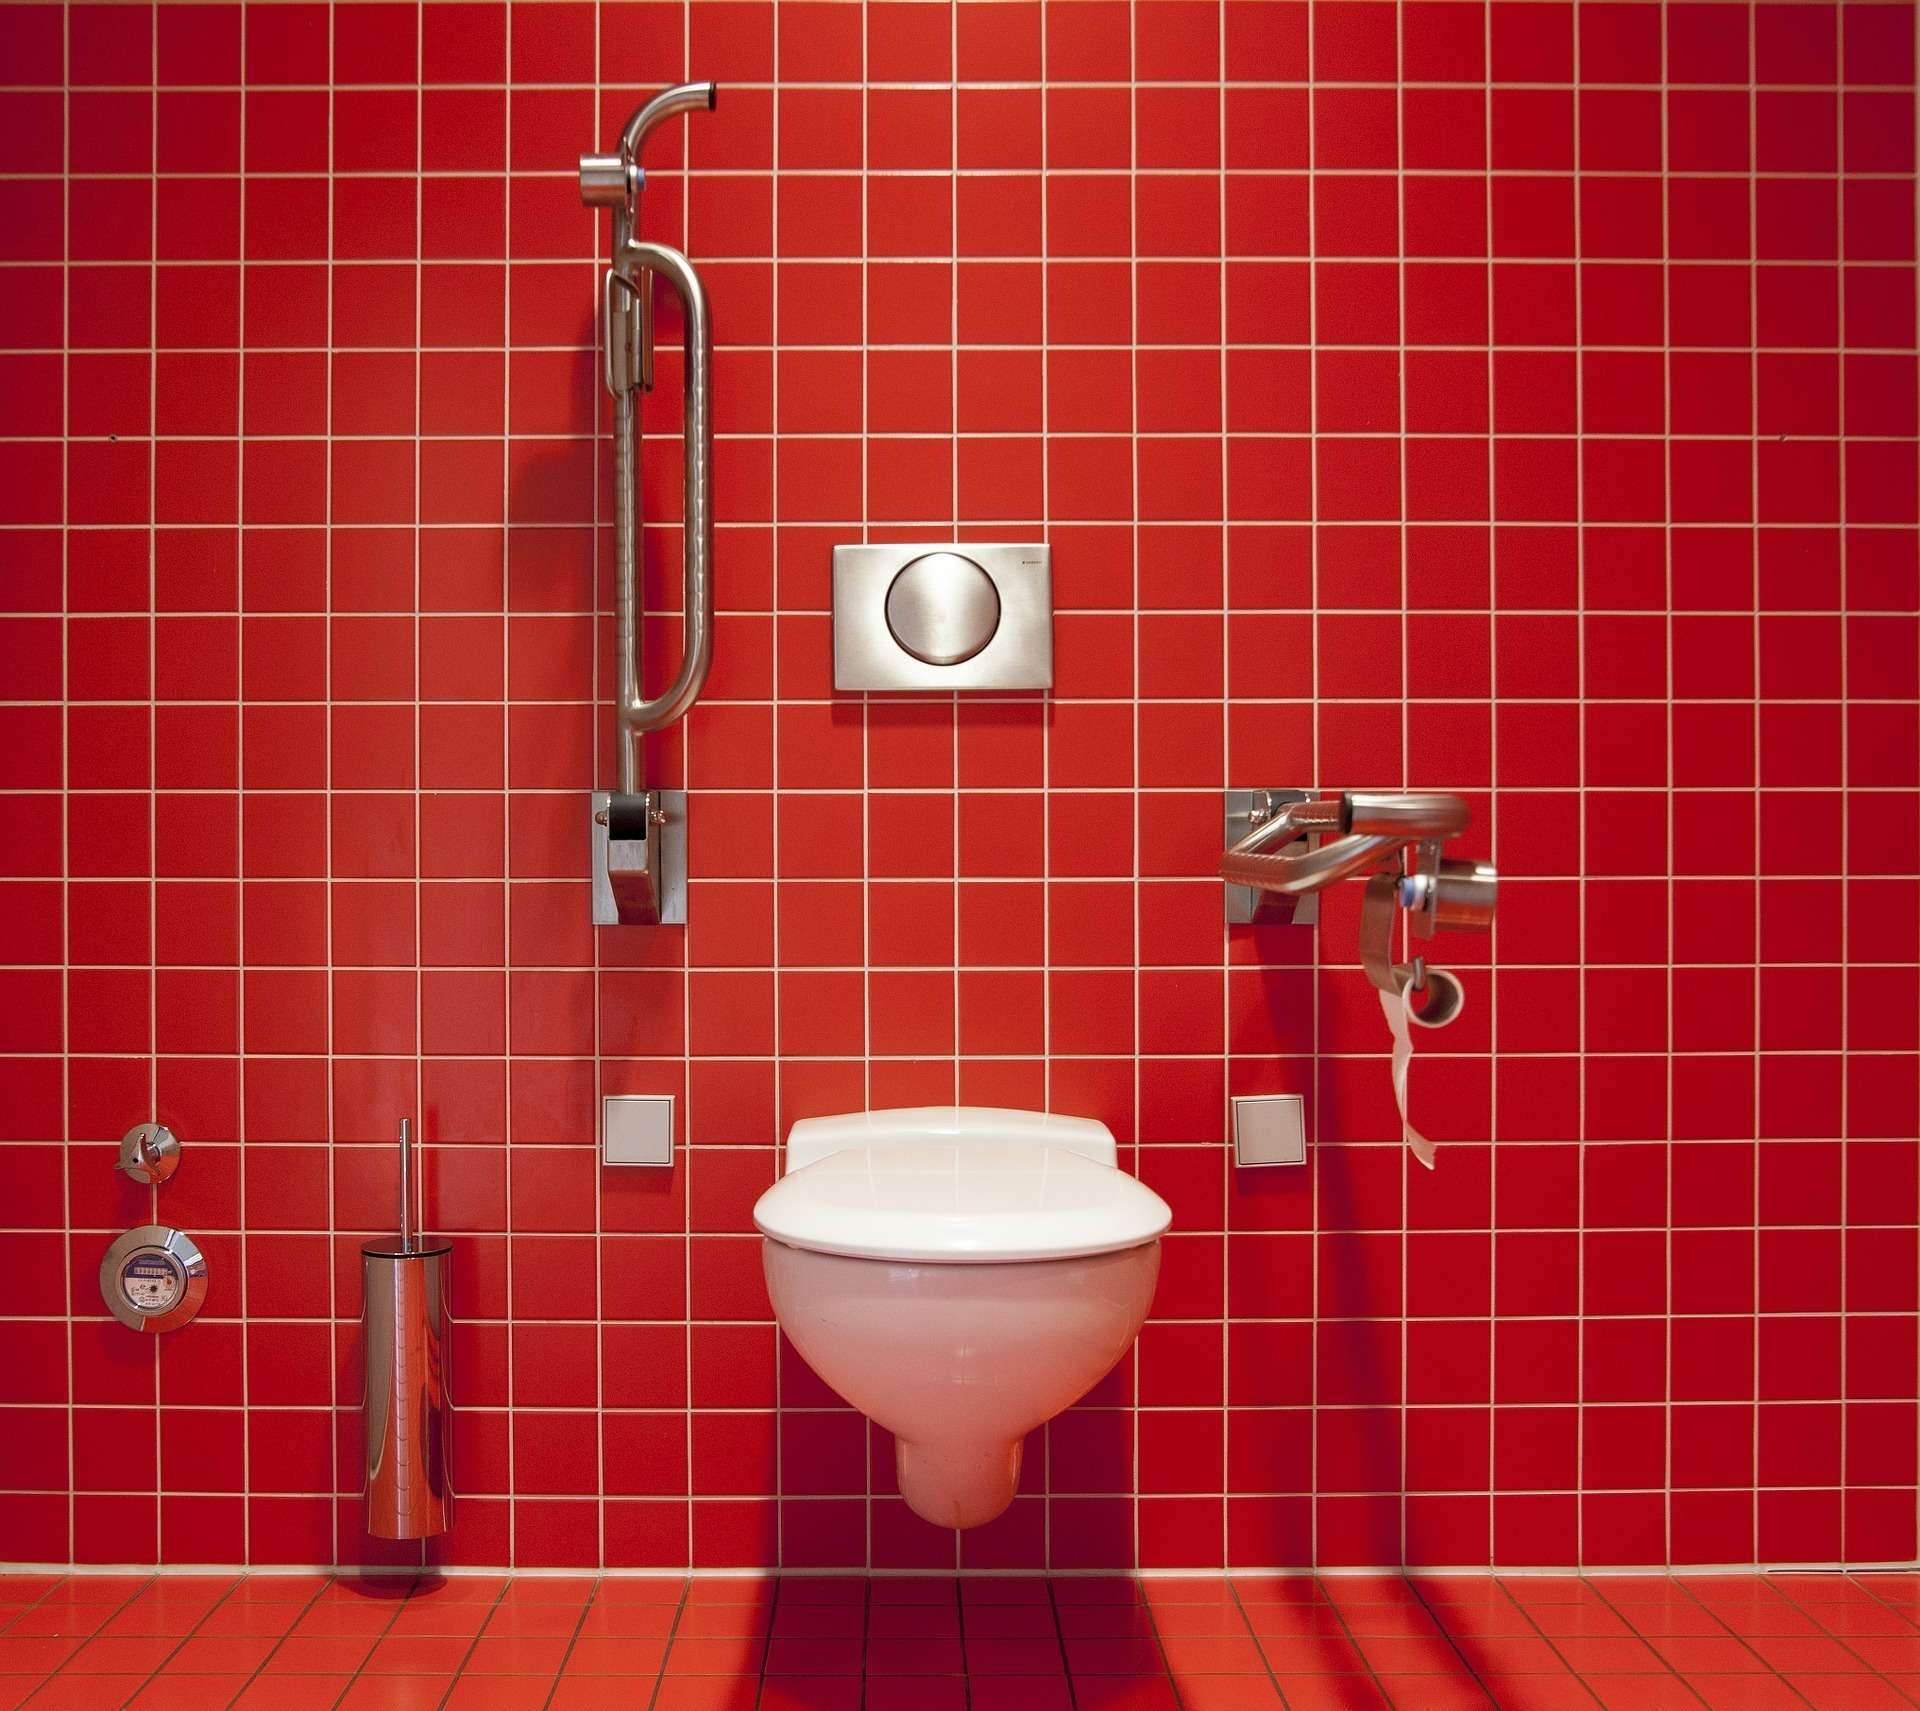 Deboucher WC Service Plombier Ouvert 7/7 24H24 île-de-France Paris